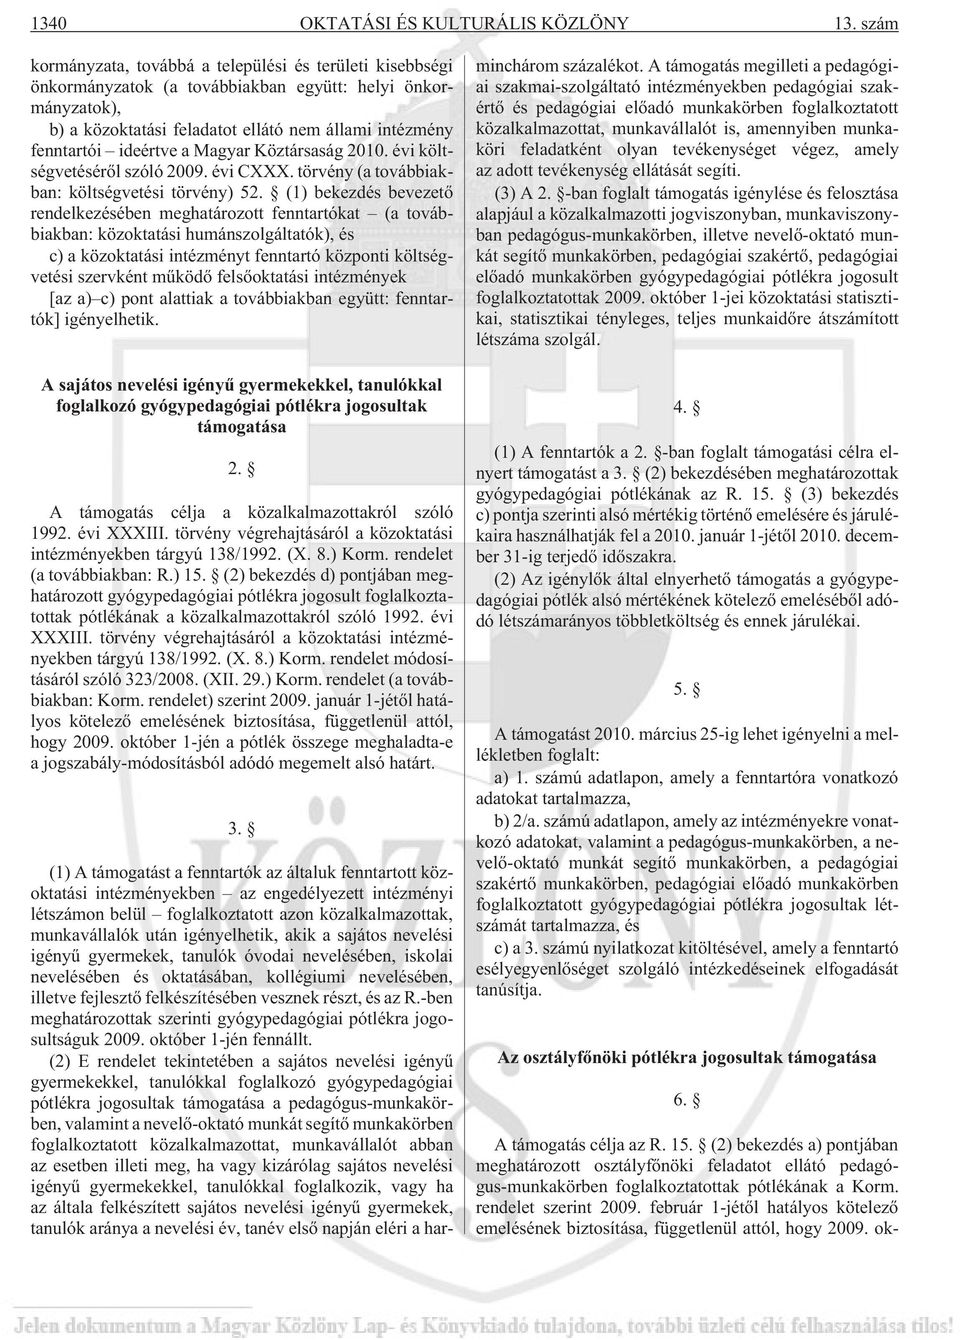 a Magyar Köztársaság 2010. évi költségvetésérõl szóló 2009. évi CXXX. törvény (a továbbiakban: költségvetési törvény) 52.